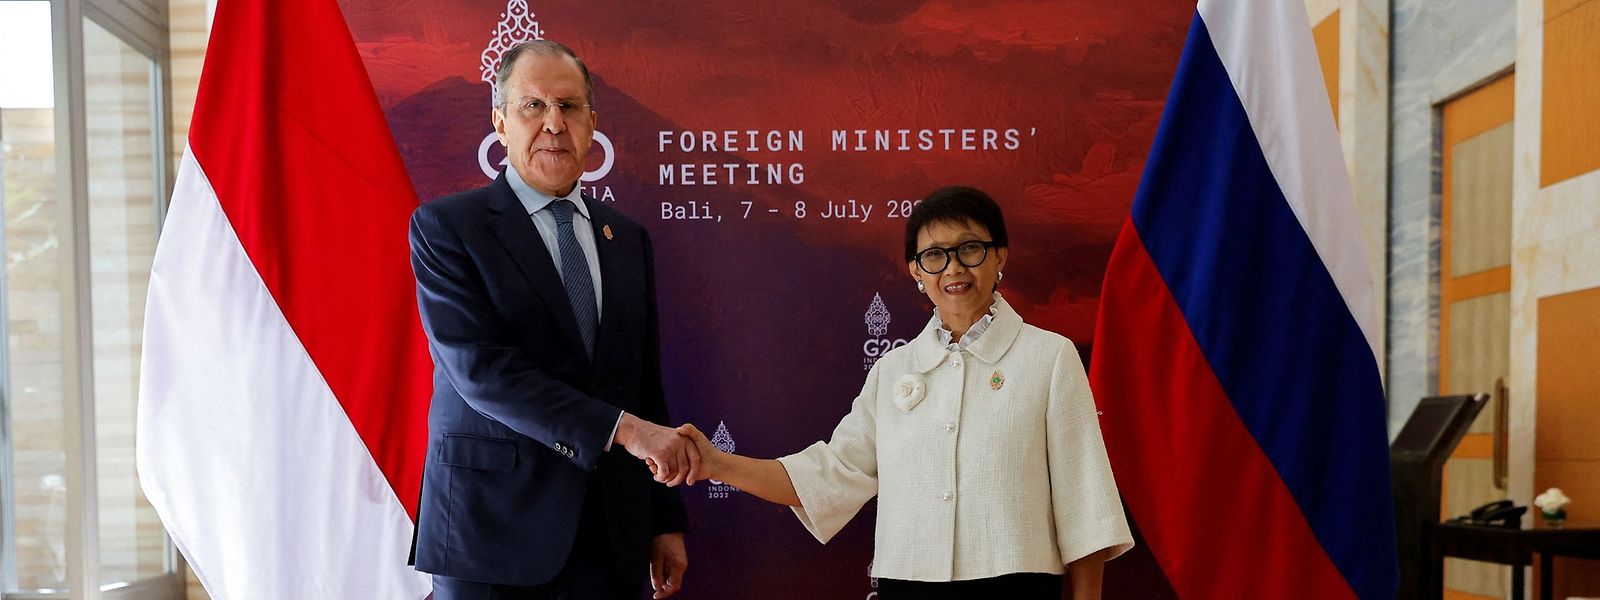 Der G20-Gipfel begann entspannt mit dem obligatorischen Handshake-Foto zwischen Russlands Außenminister Sergej Lawrow und der indonesischen Gastgeberin Retno Marsudi.